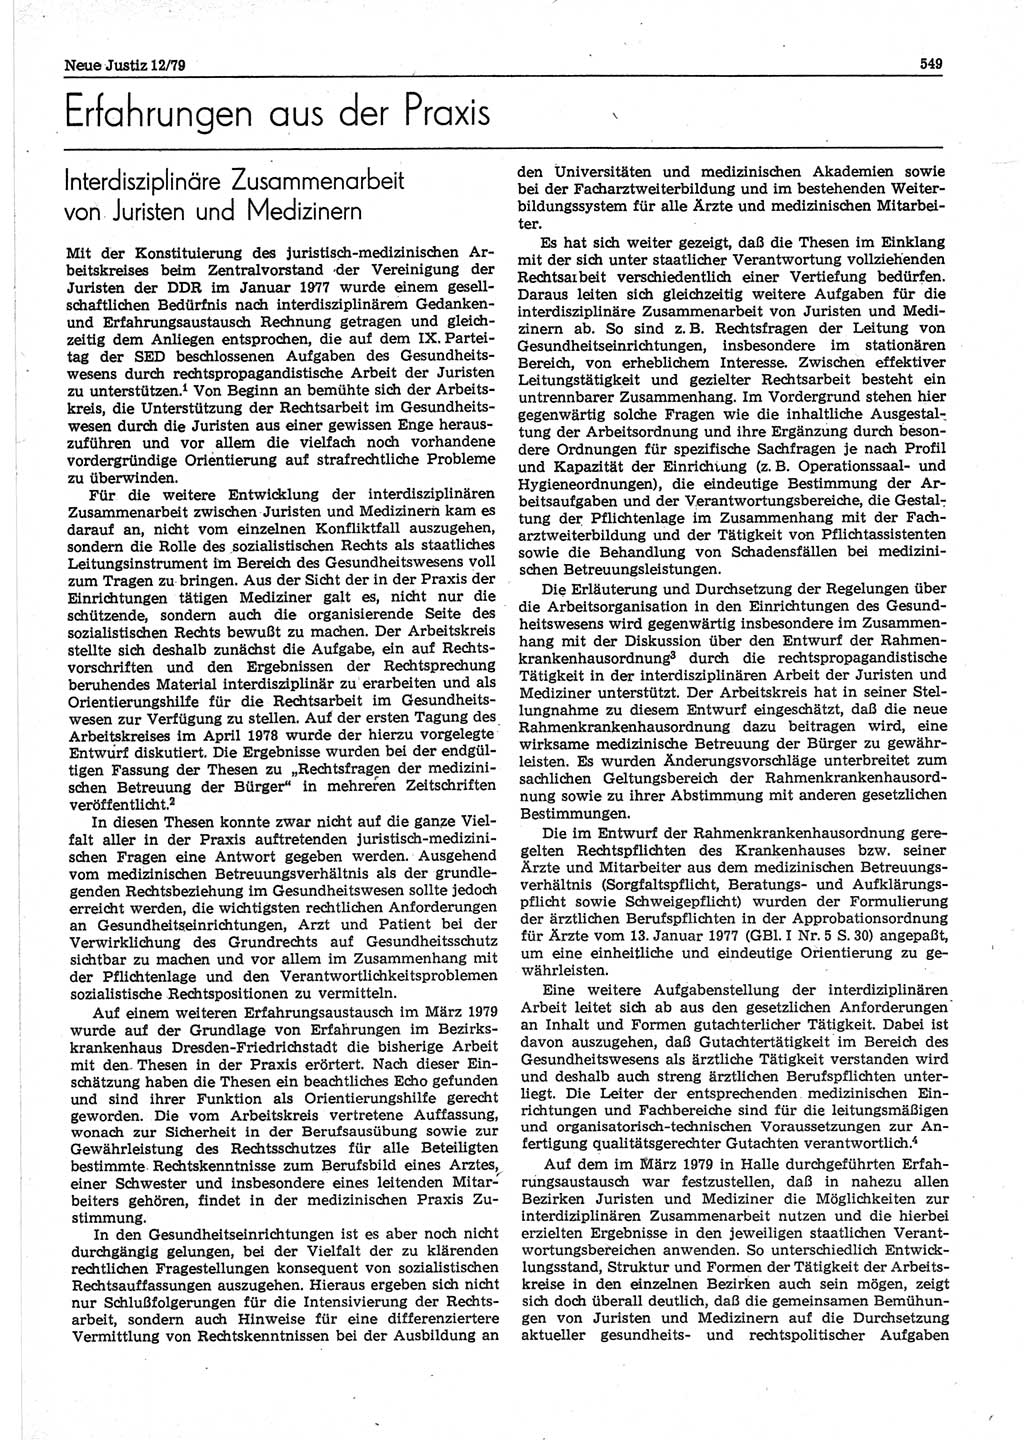 Neue Justiz (NJ), Zeitschrift für sozialistisches Recht und Gesetzlichkeit [Deutsche Demokratische Republik (DDR)], 33. Jahrgang 1979, Seite 549 (NJ DDR 1979, S. 549)